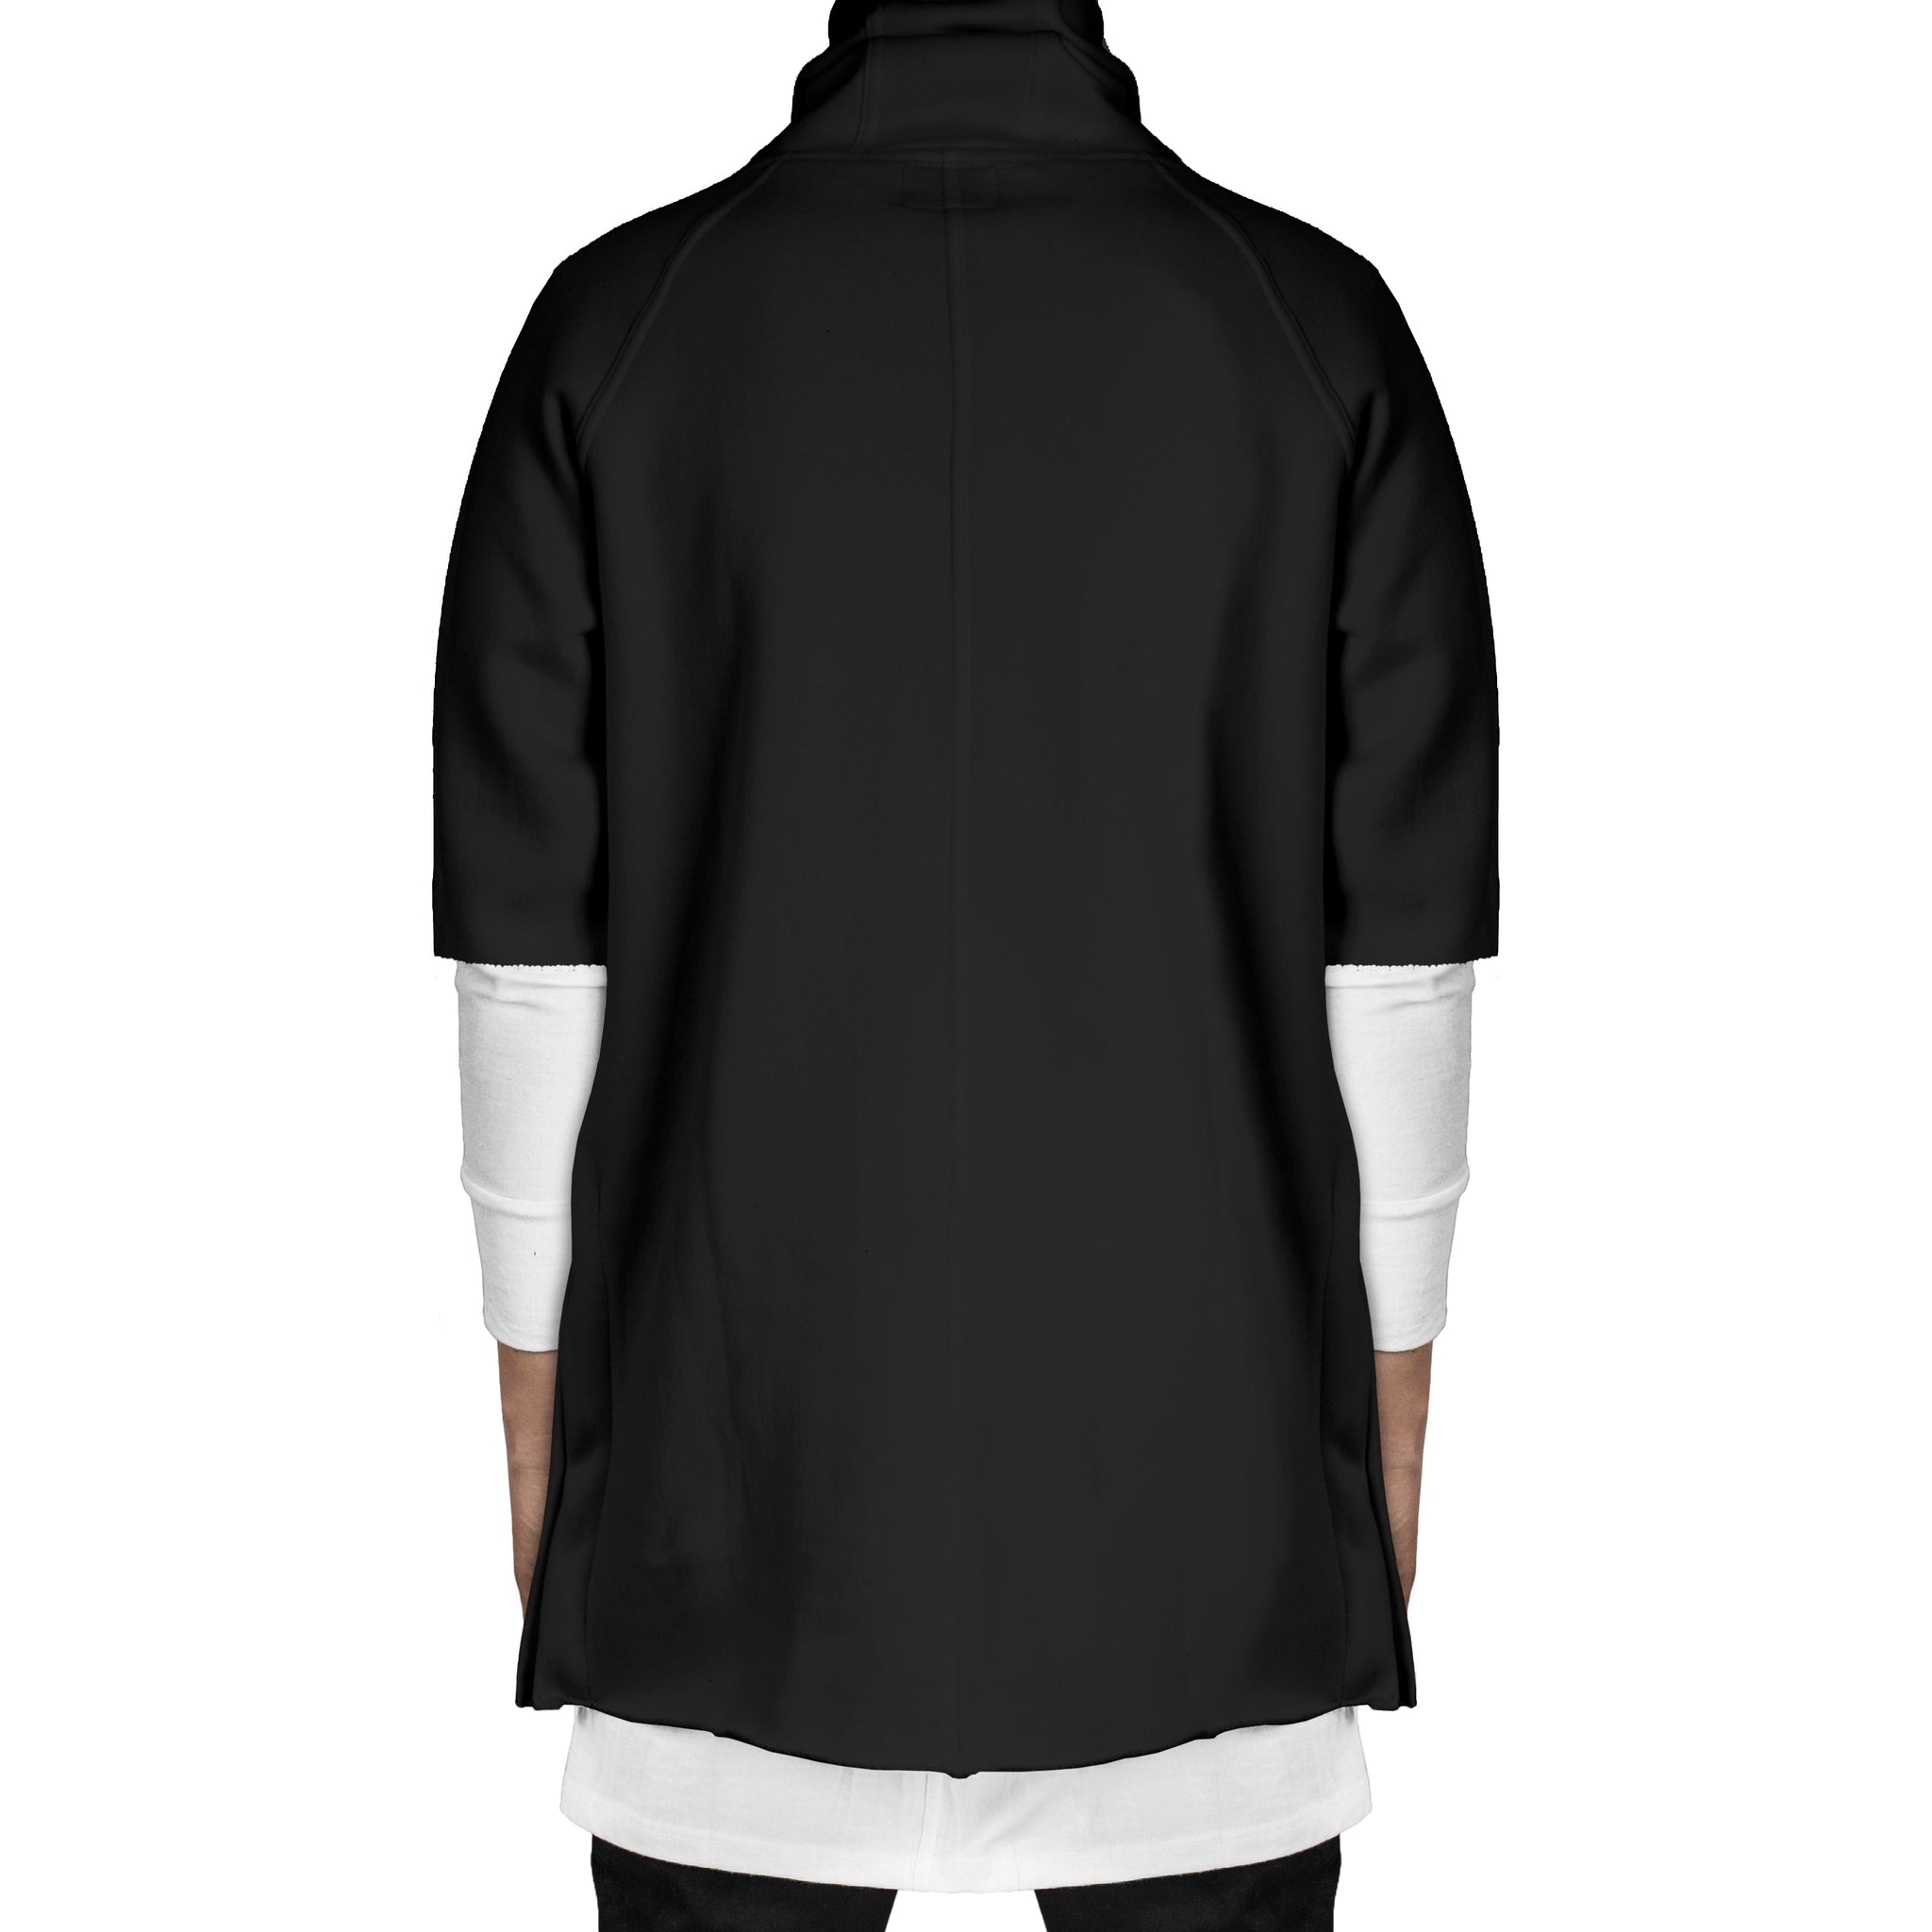 Camiseta con capucha y cremallera: negra